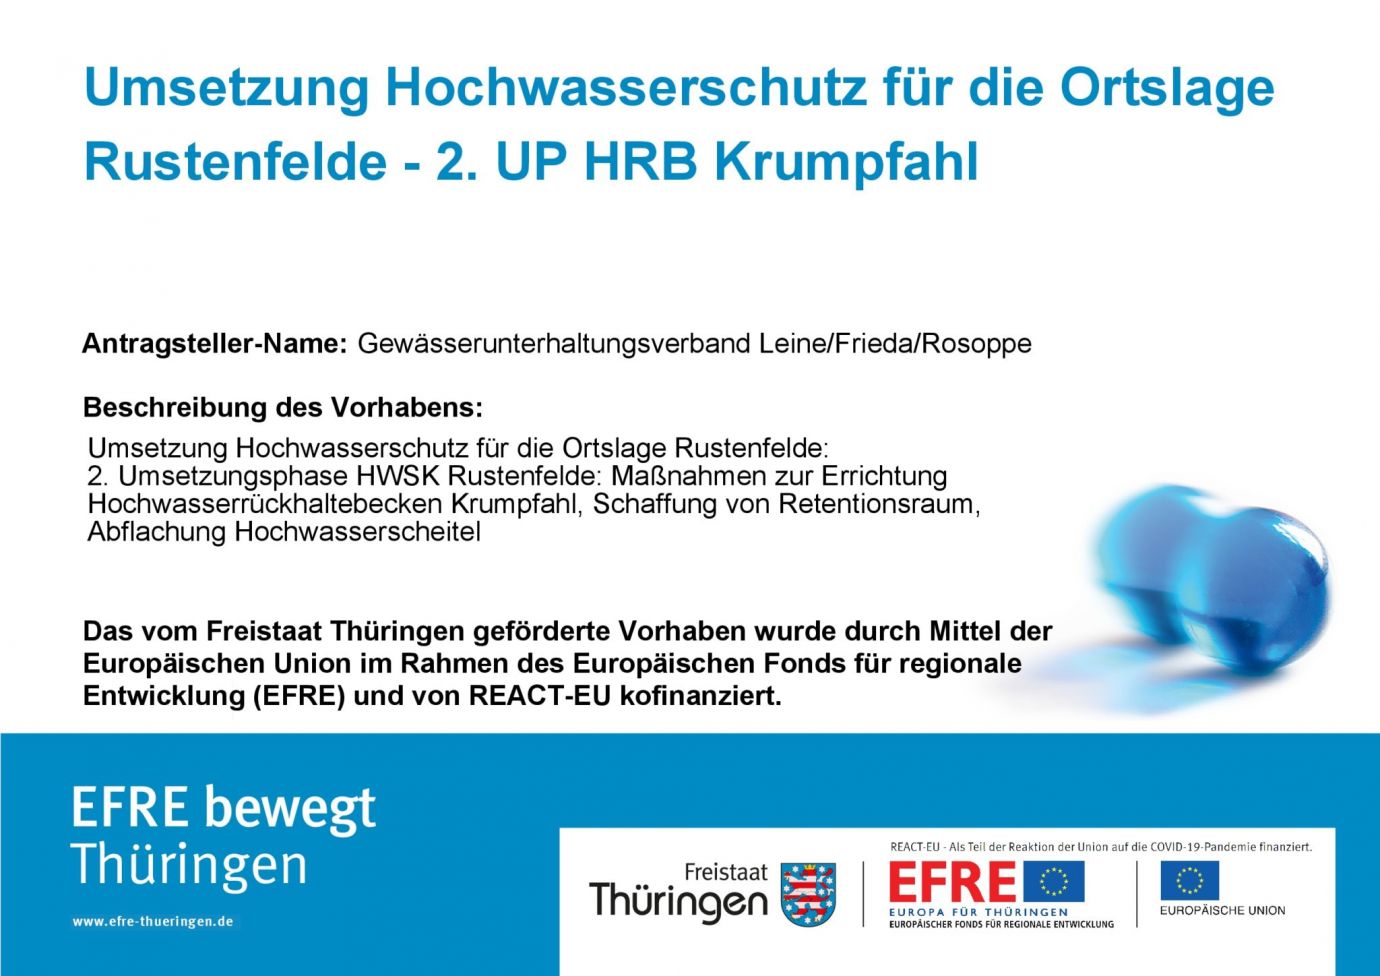 Bildtitel: Umsetzung Hochwasserschutz für die Ortslage Rustenfelde - 2. UP HRB Krumpfahl